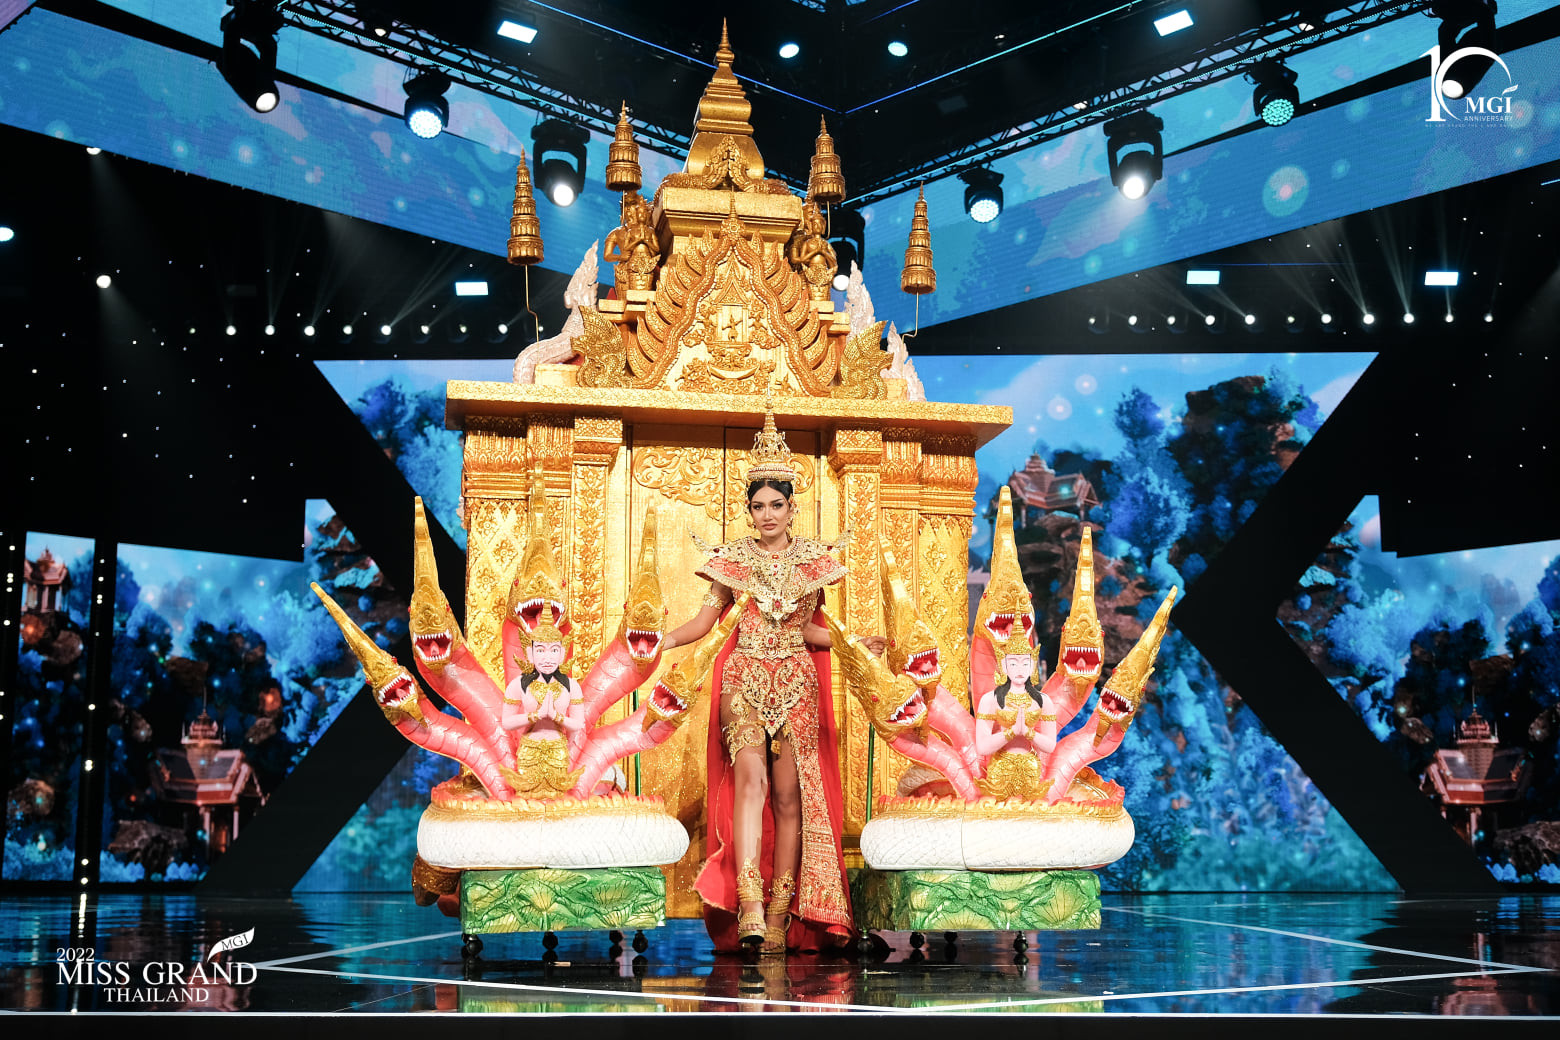 trajes tipicos de candidatas a miss grand thailand 2022. - Página 2 VZgGef